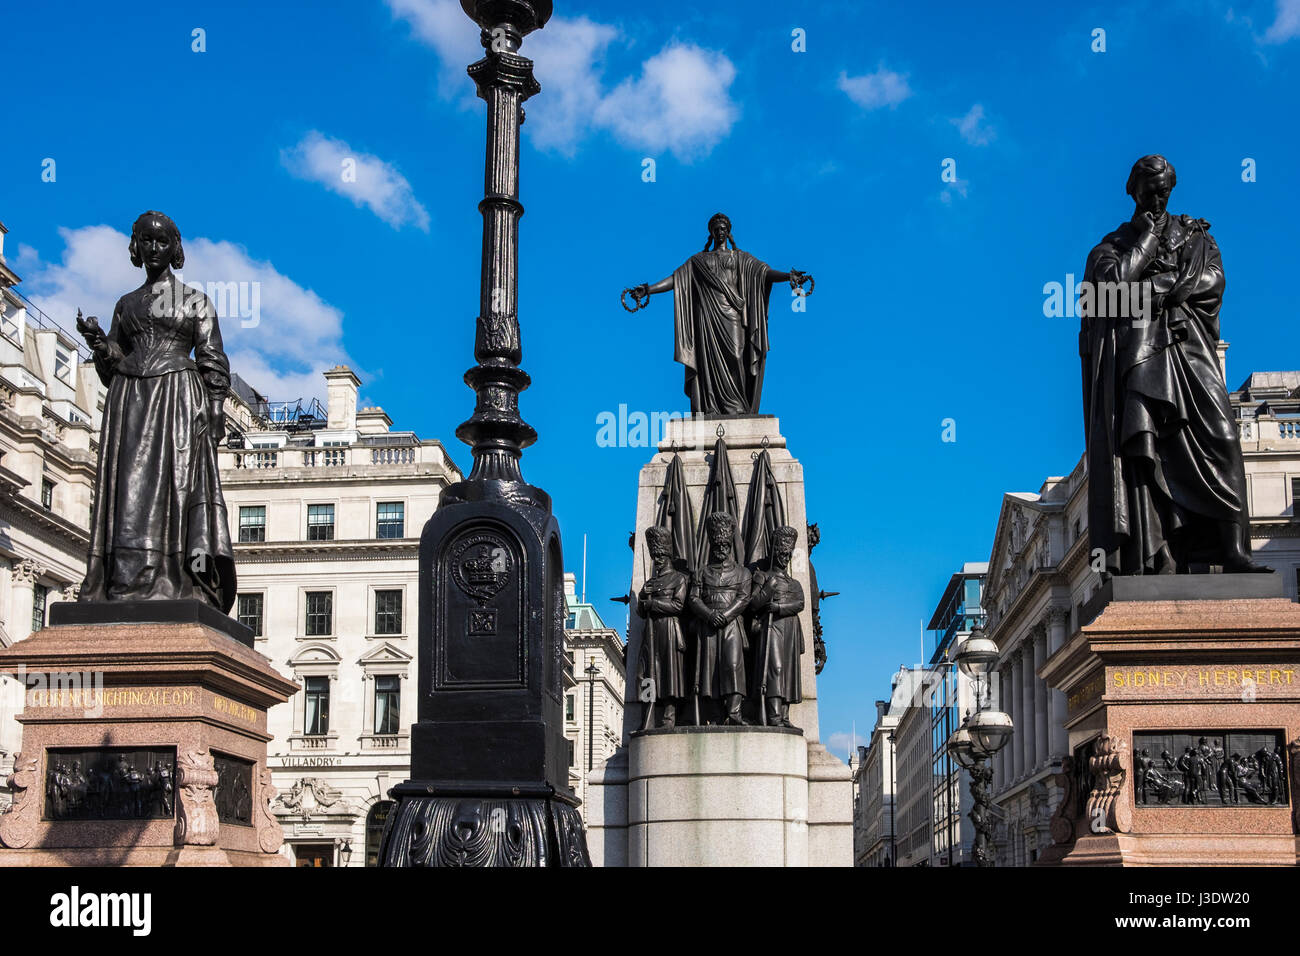 Los guardias de Crimea es un monumento conmemorativo de la guerra en St James's, de Londres, que conmemora la victoria de los aliados en la guerra de Crimea de 1853-56 Foto de stock